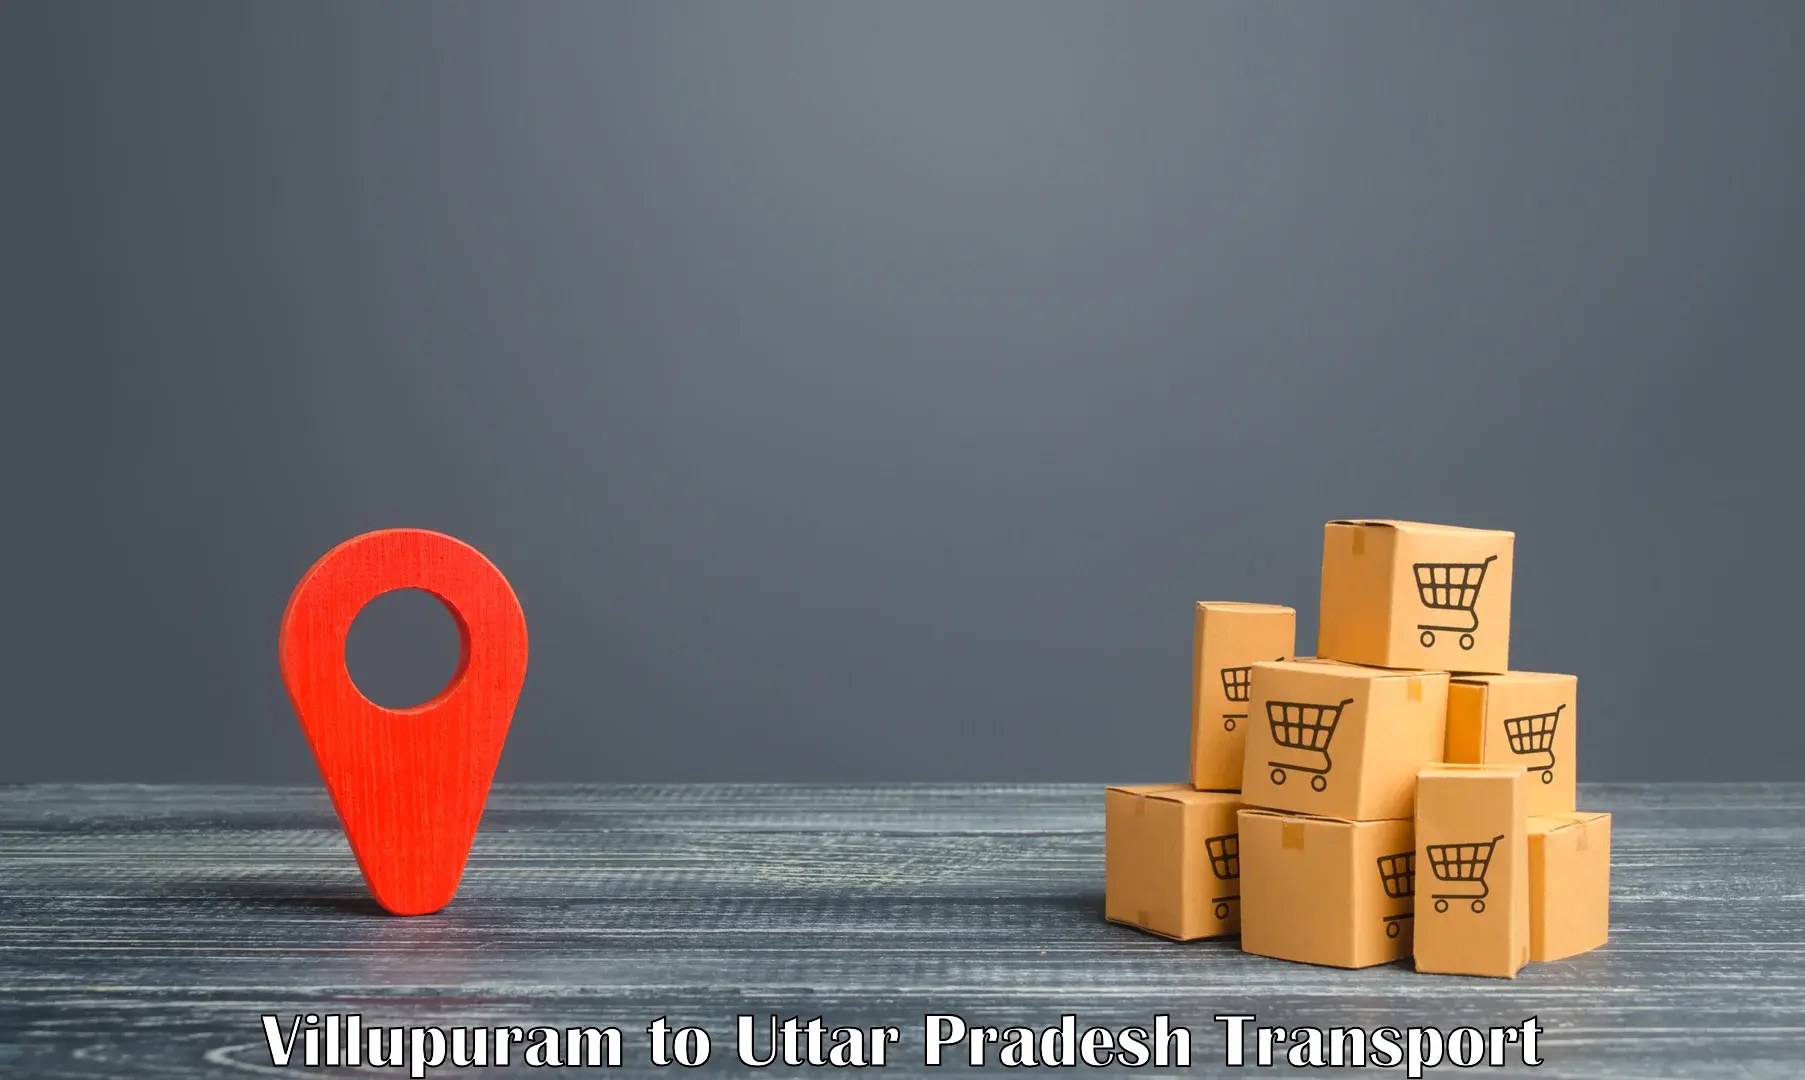 Part load transport service in India Villupuram to Mohanlalganj